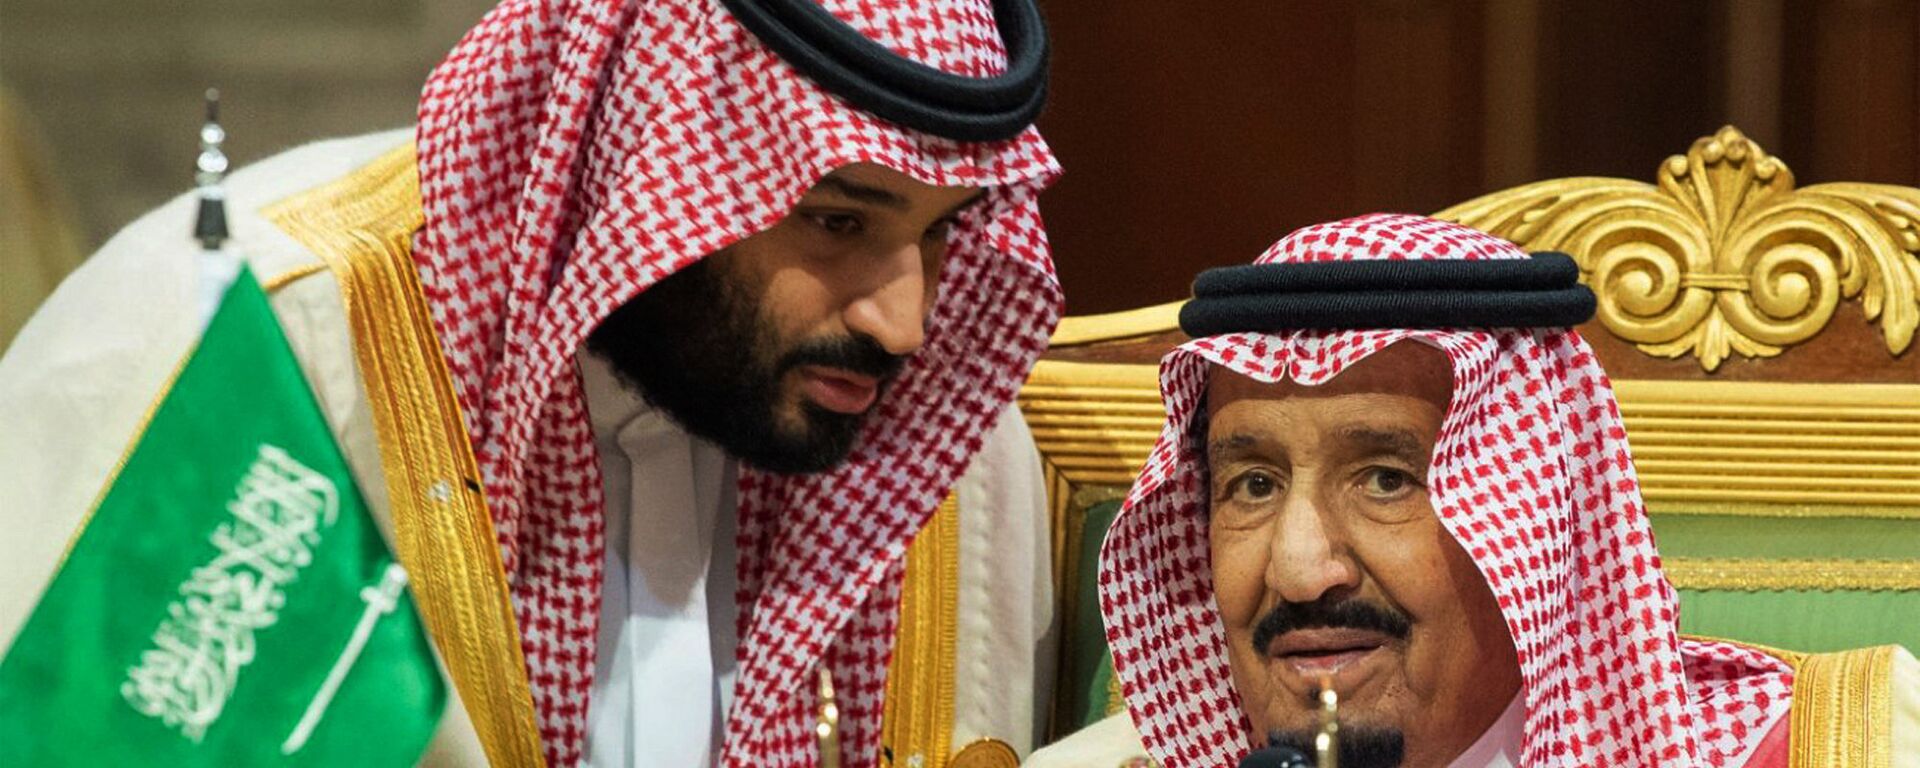 ولي العهد السعودي الأمير محمد بن سلمان يتحدث إلى العاهل السعودي الملك سلمان بن عبد العزيز آل سعود في افتتاح القمة الخليجية الـ 39 في الرياض، 9 ديسمبر/كانون الأول 2018 - سبوتنيك عربي, 1920, 30.09.2020